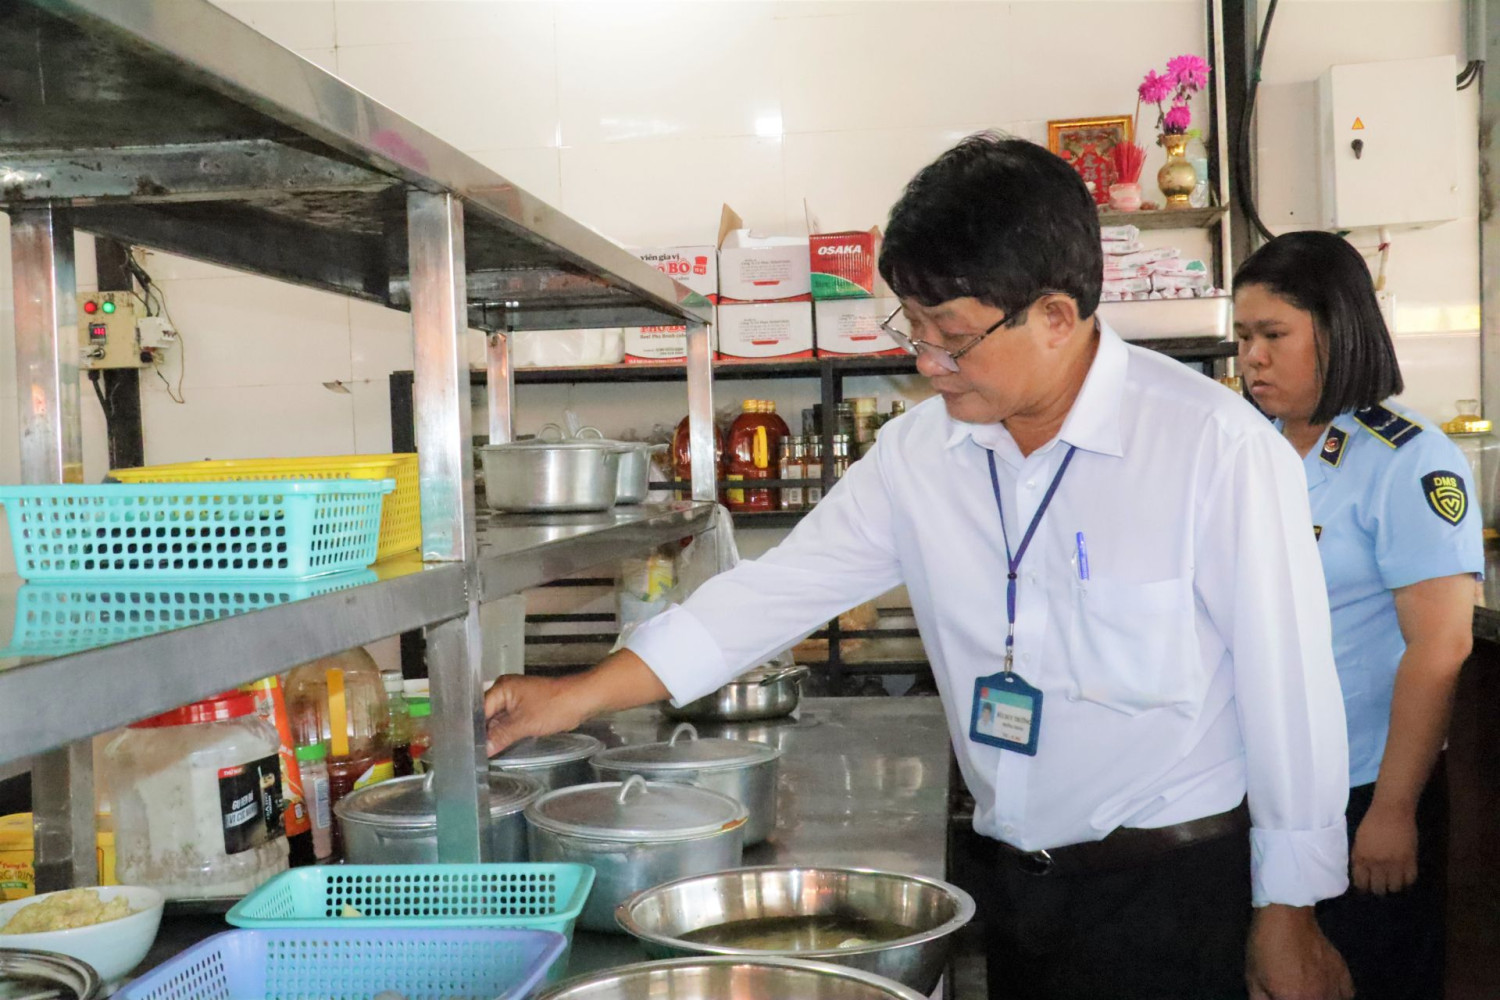 Đoàn kiểm tra liên ngành an toàn vệ sinh thực phẩm Sở Y tế thường xuyên tổ chức kiểm tra tại các hàng quán ăn uống để nâng cao ý thức kinh doanh, chế biến thực phẩm cho người dân.